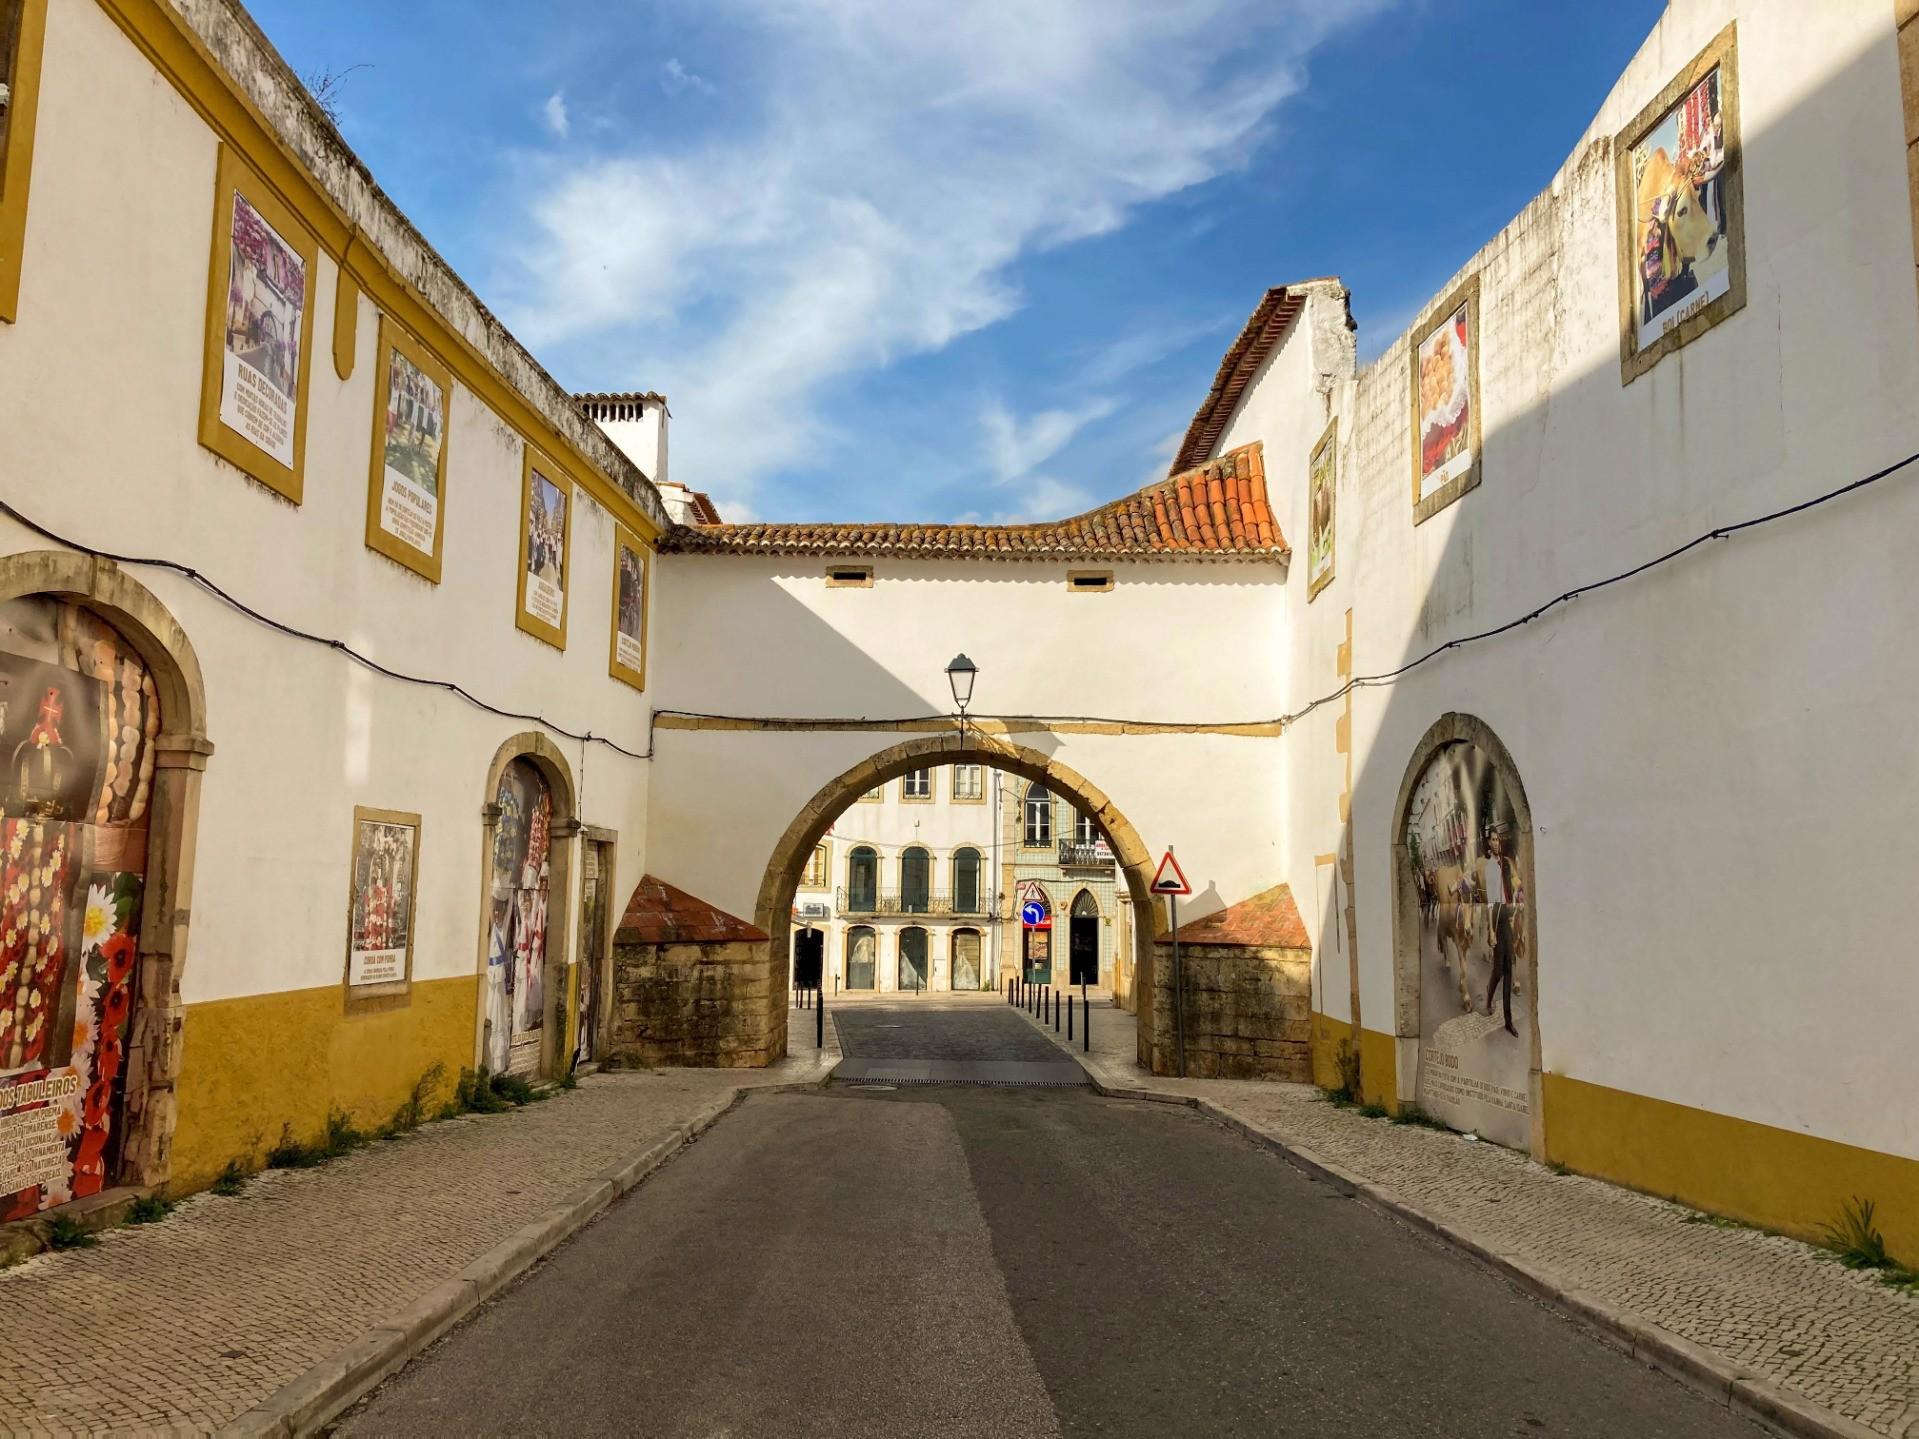 Enquadramento - O Arco das Freiras, em Tomar, é um arco de volta inteira sobre a Rua de Santa Iria, que é uma passagem aérea que liga o Convento de Santa Iria ao antigo Palácio de Frei António de Lisboa. A sua origem remonta ao século XVI.